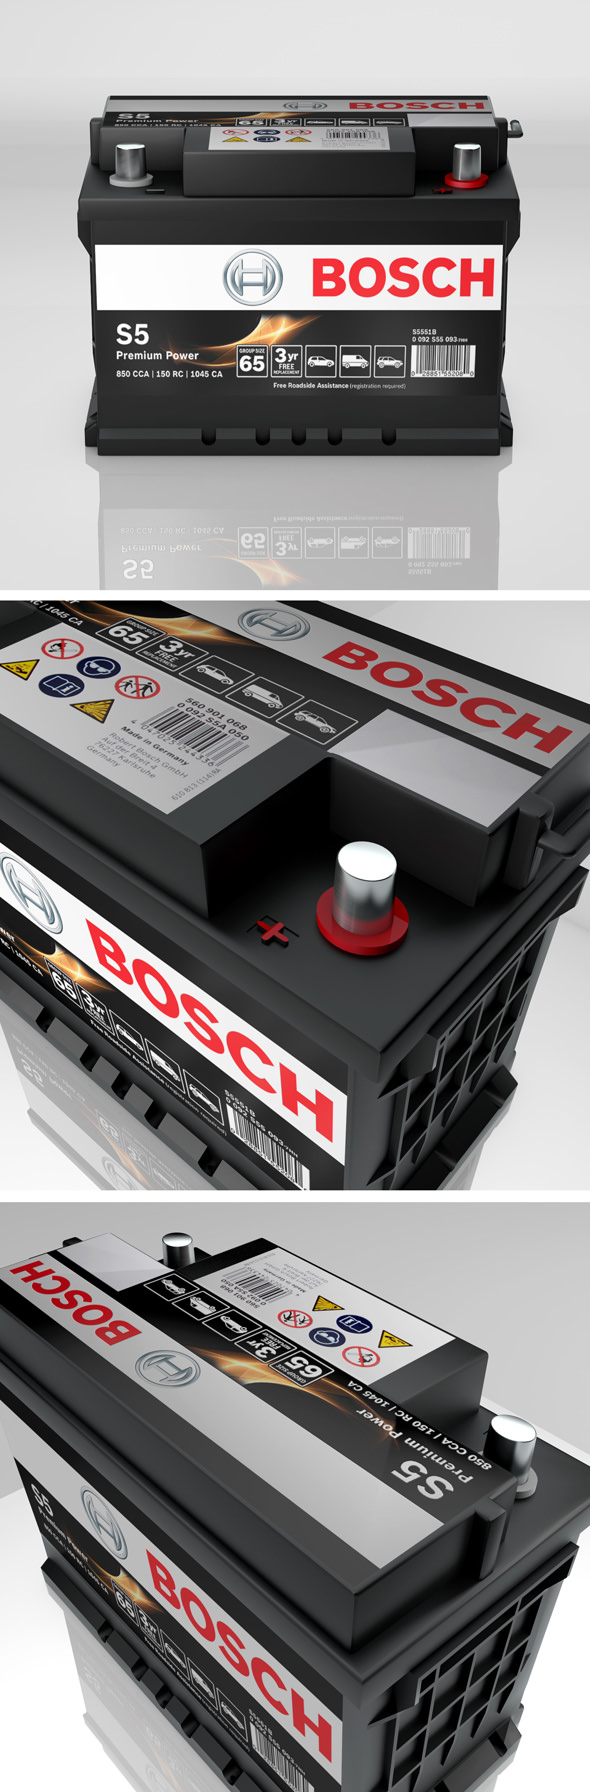 High detailed Bosch - 3Docean 18087765